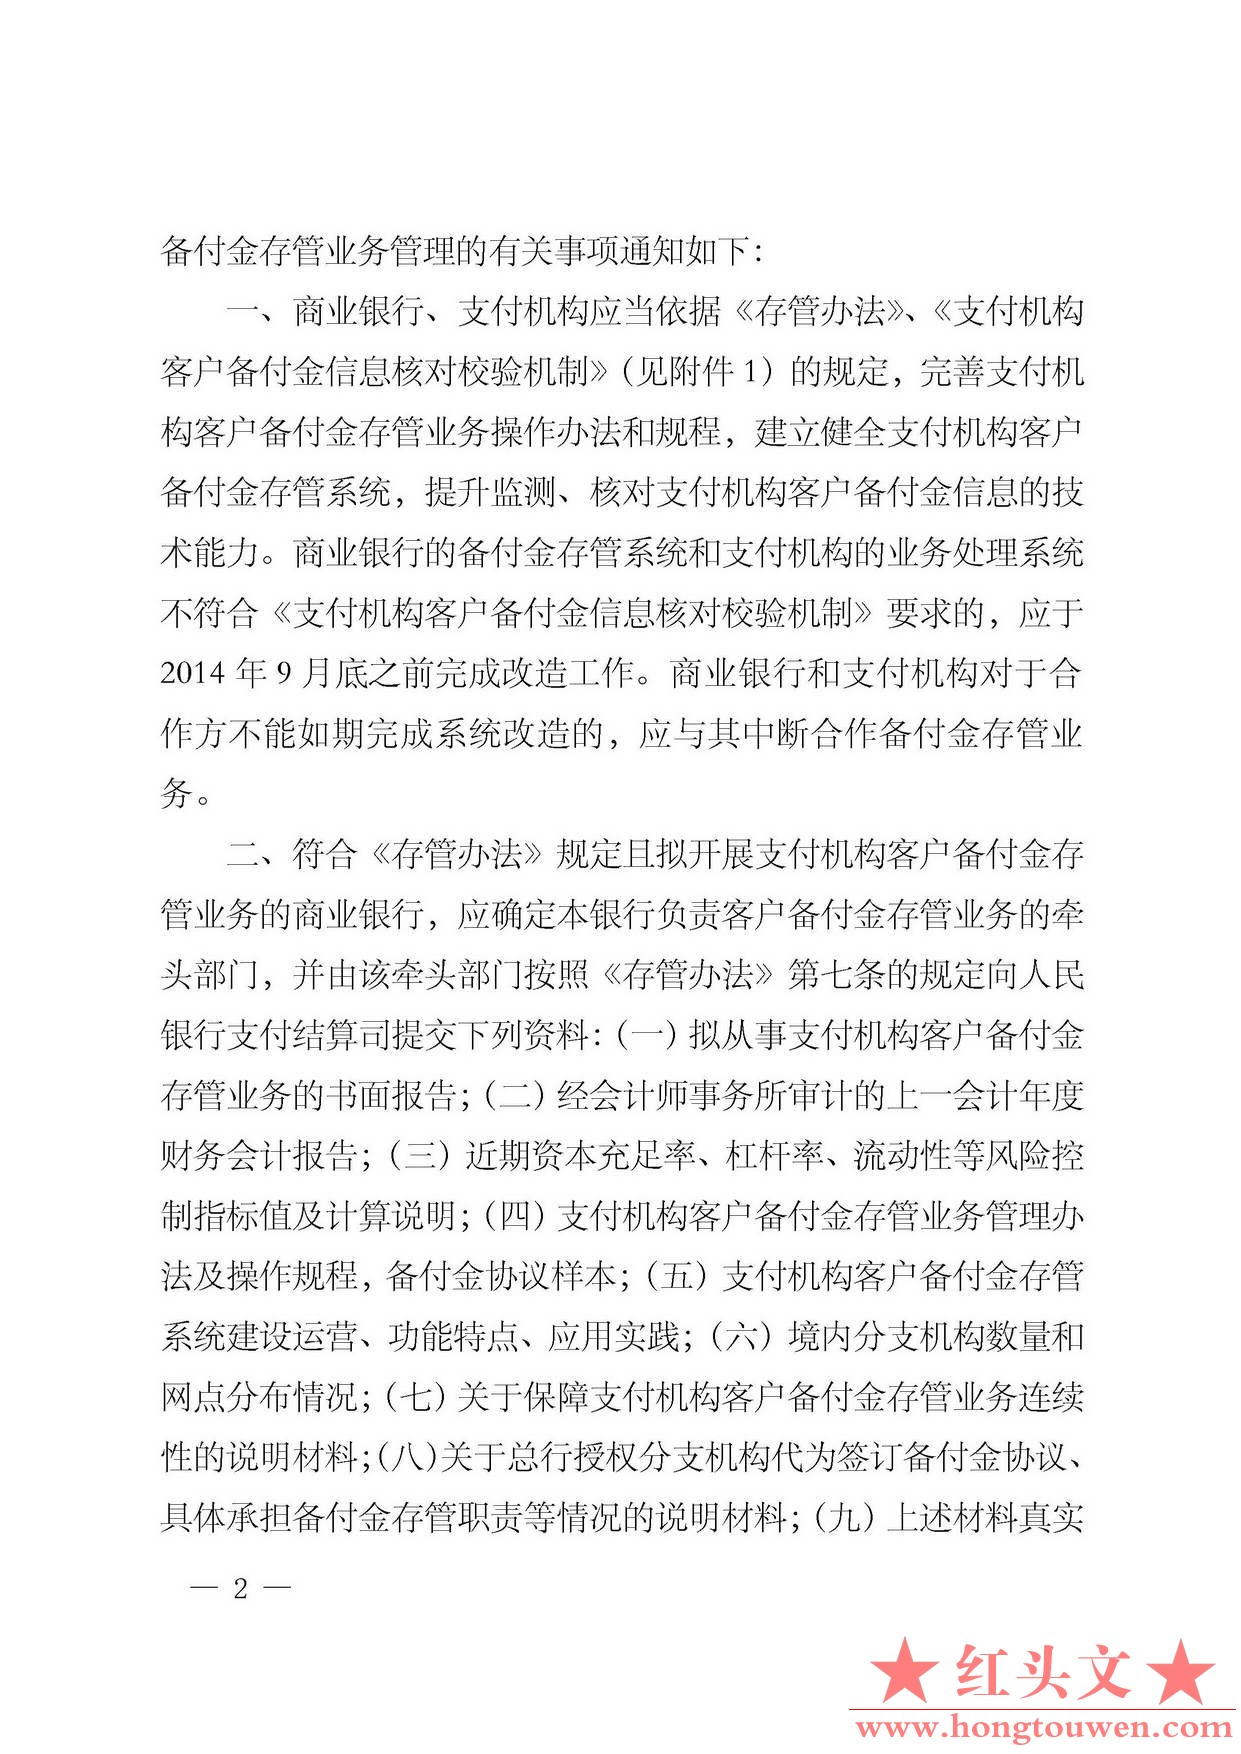 银发[2013]256号-中国人民银行关于建立支付机构客户备付金信息核对校验机制的通知_页.jpg